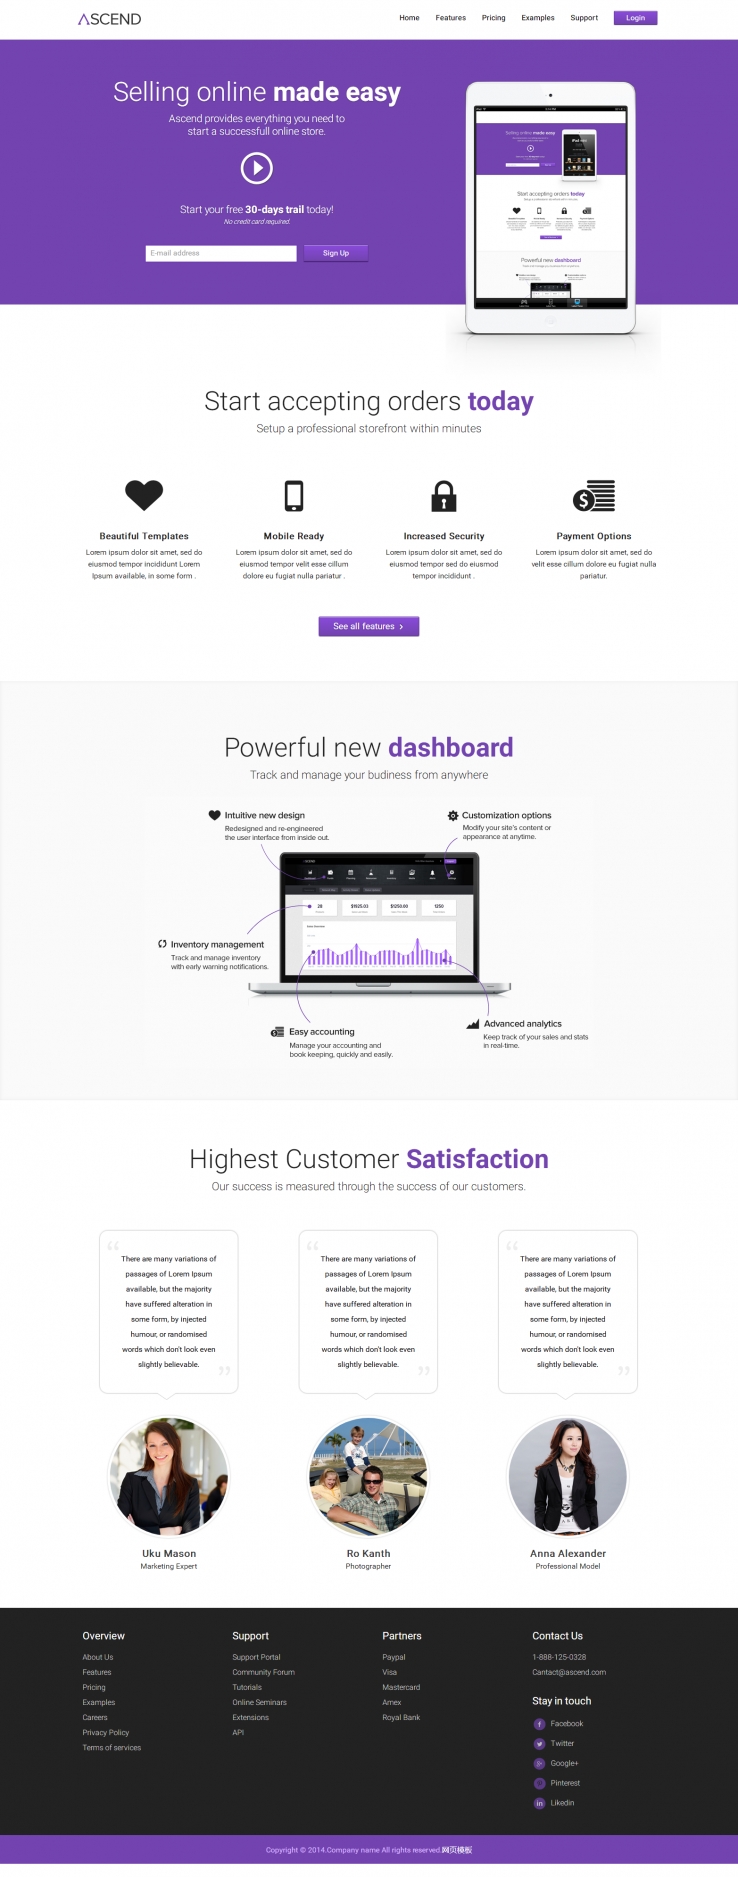 紫色扁平化风格的数码产品销售网站模板